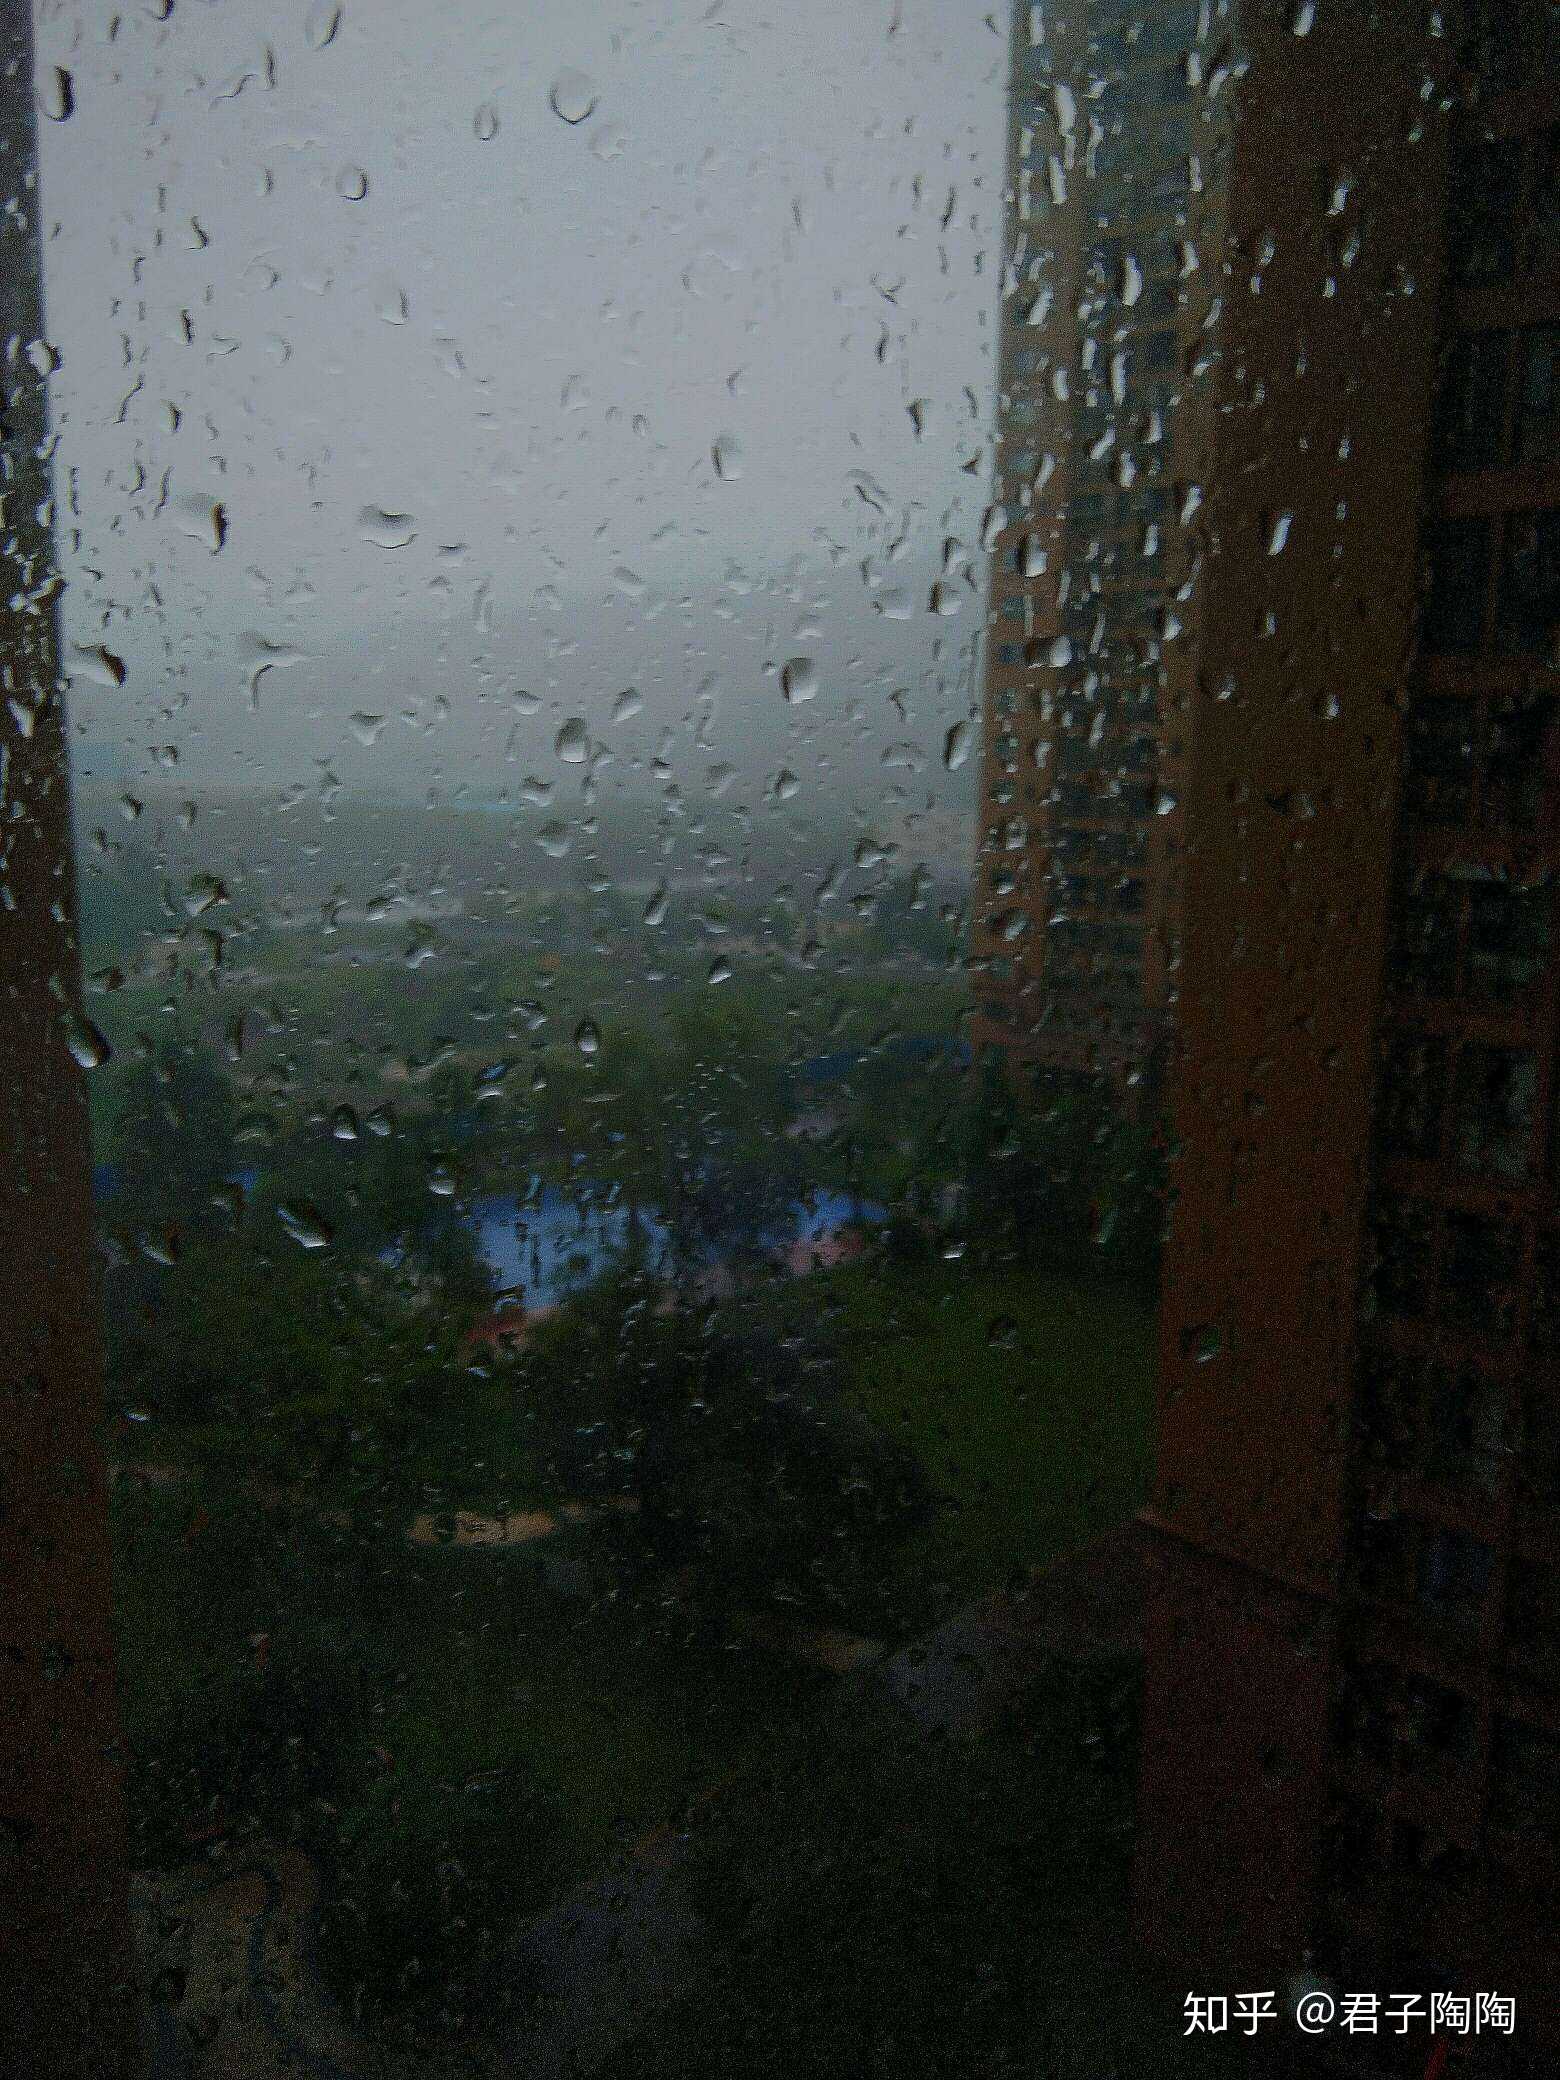 窗外,大雨滂沱